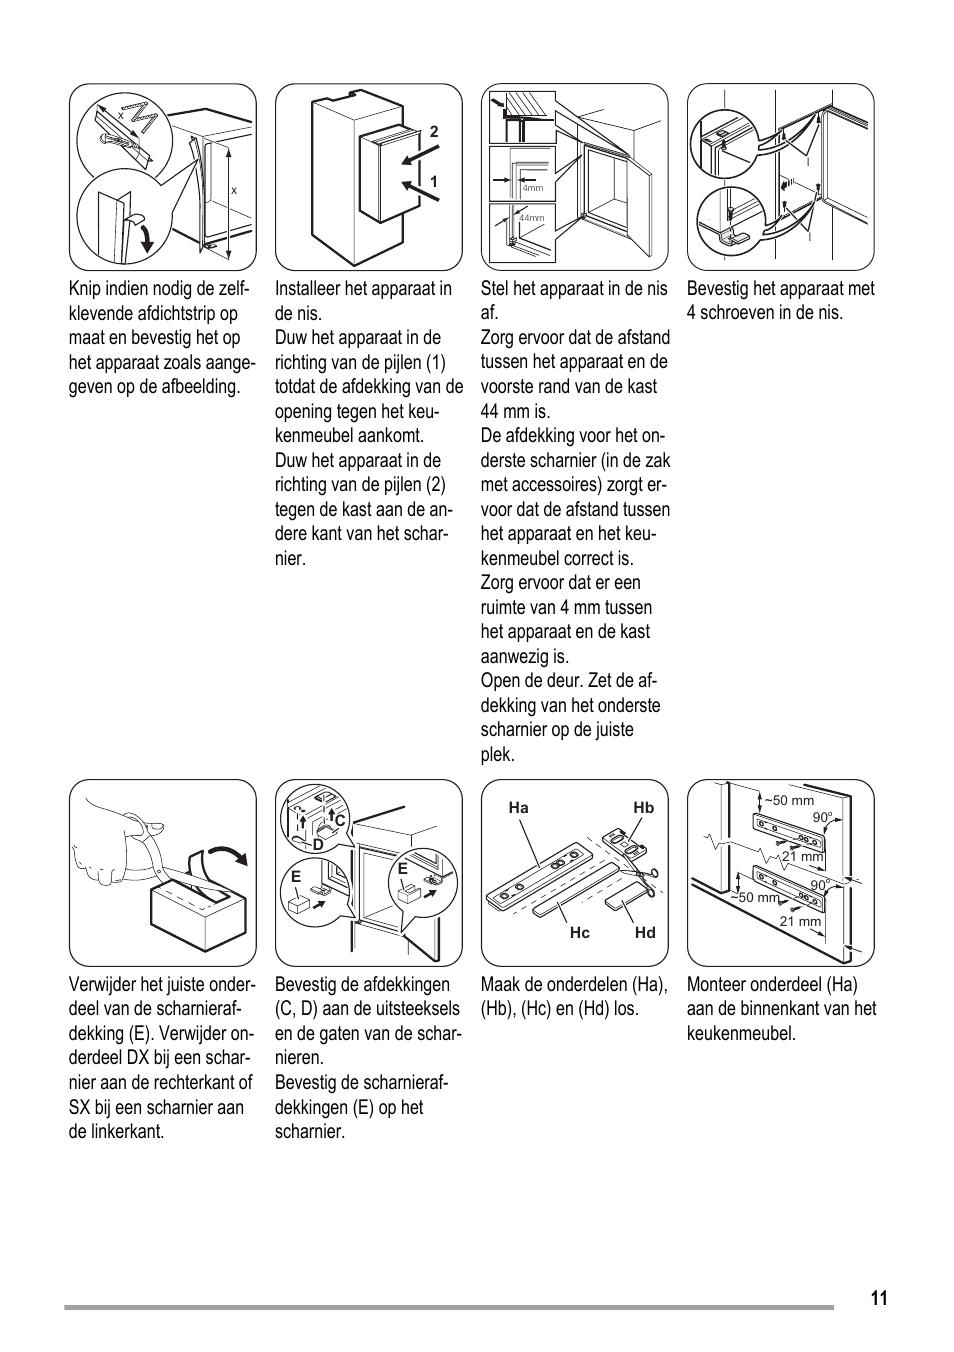 Maak de onderdelen (ha), (hb), (hc) en (hd) los | ZANKER KBA 17401 SK User Manual | Page 11 / 52